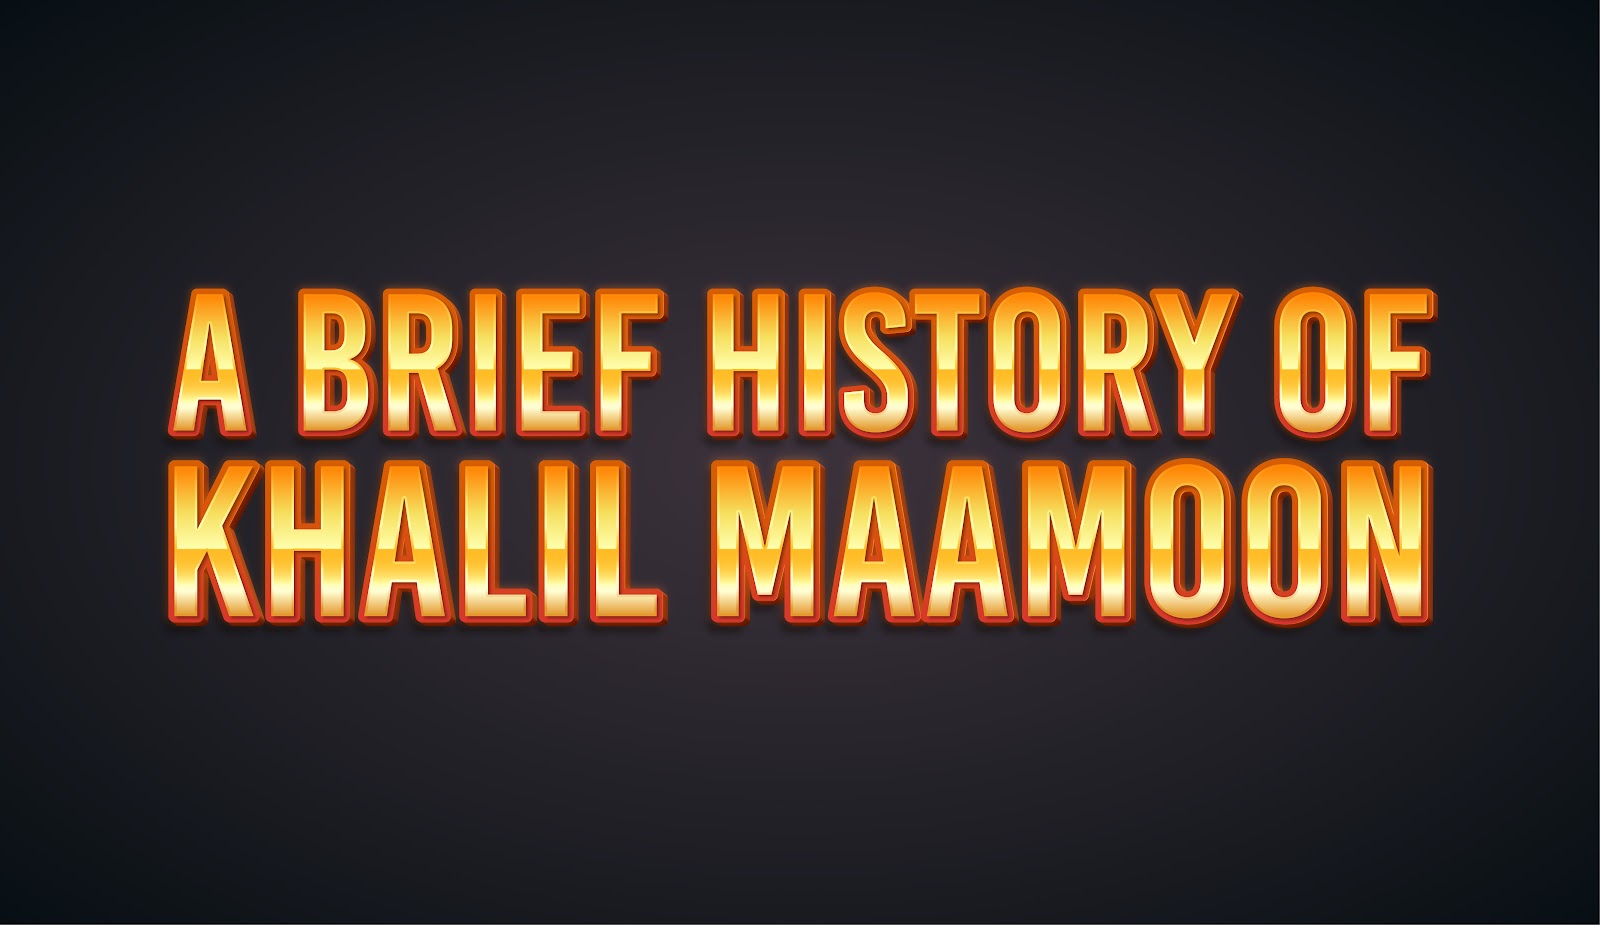 A Brief History of Khalil Maamoon